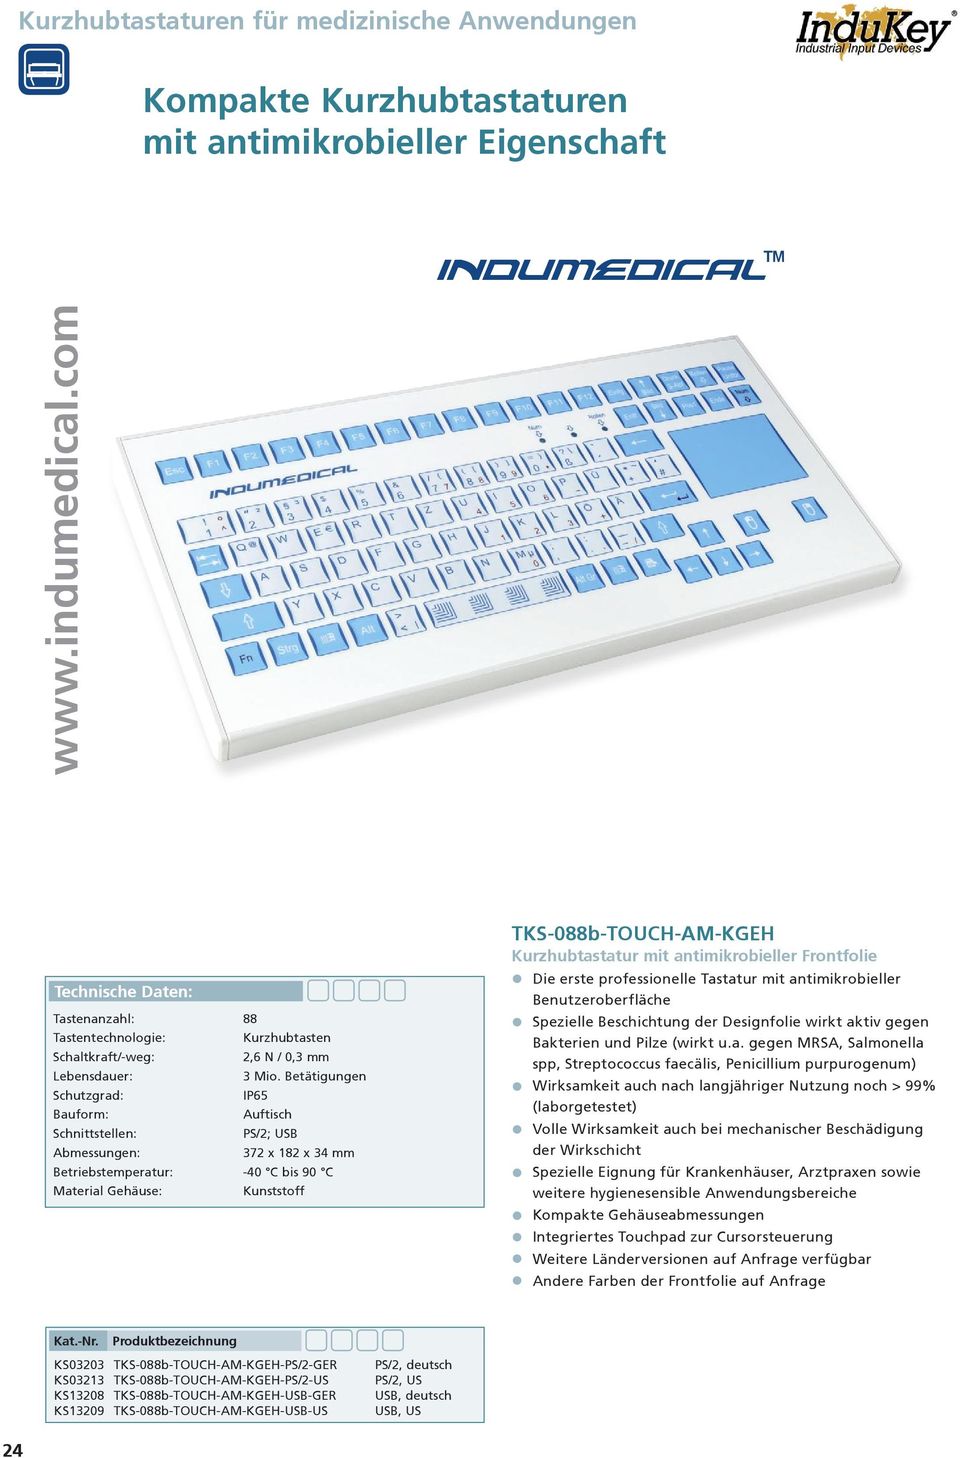 PS/2 IP65 gebraucht InduKey Tastatur TKS-105a-KGEH-PS/2-GER KS07210 